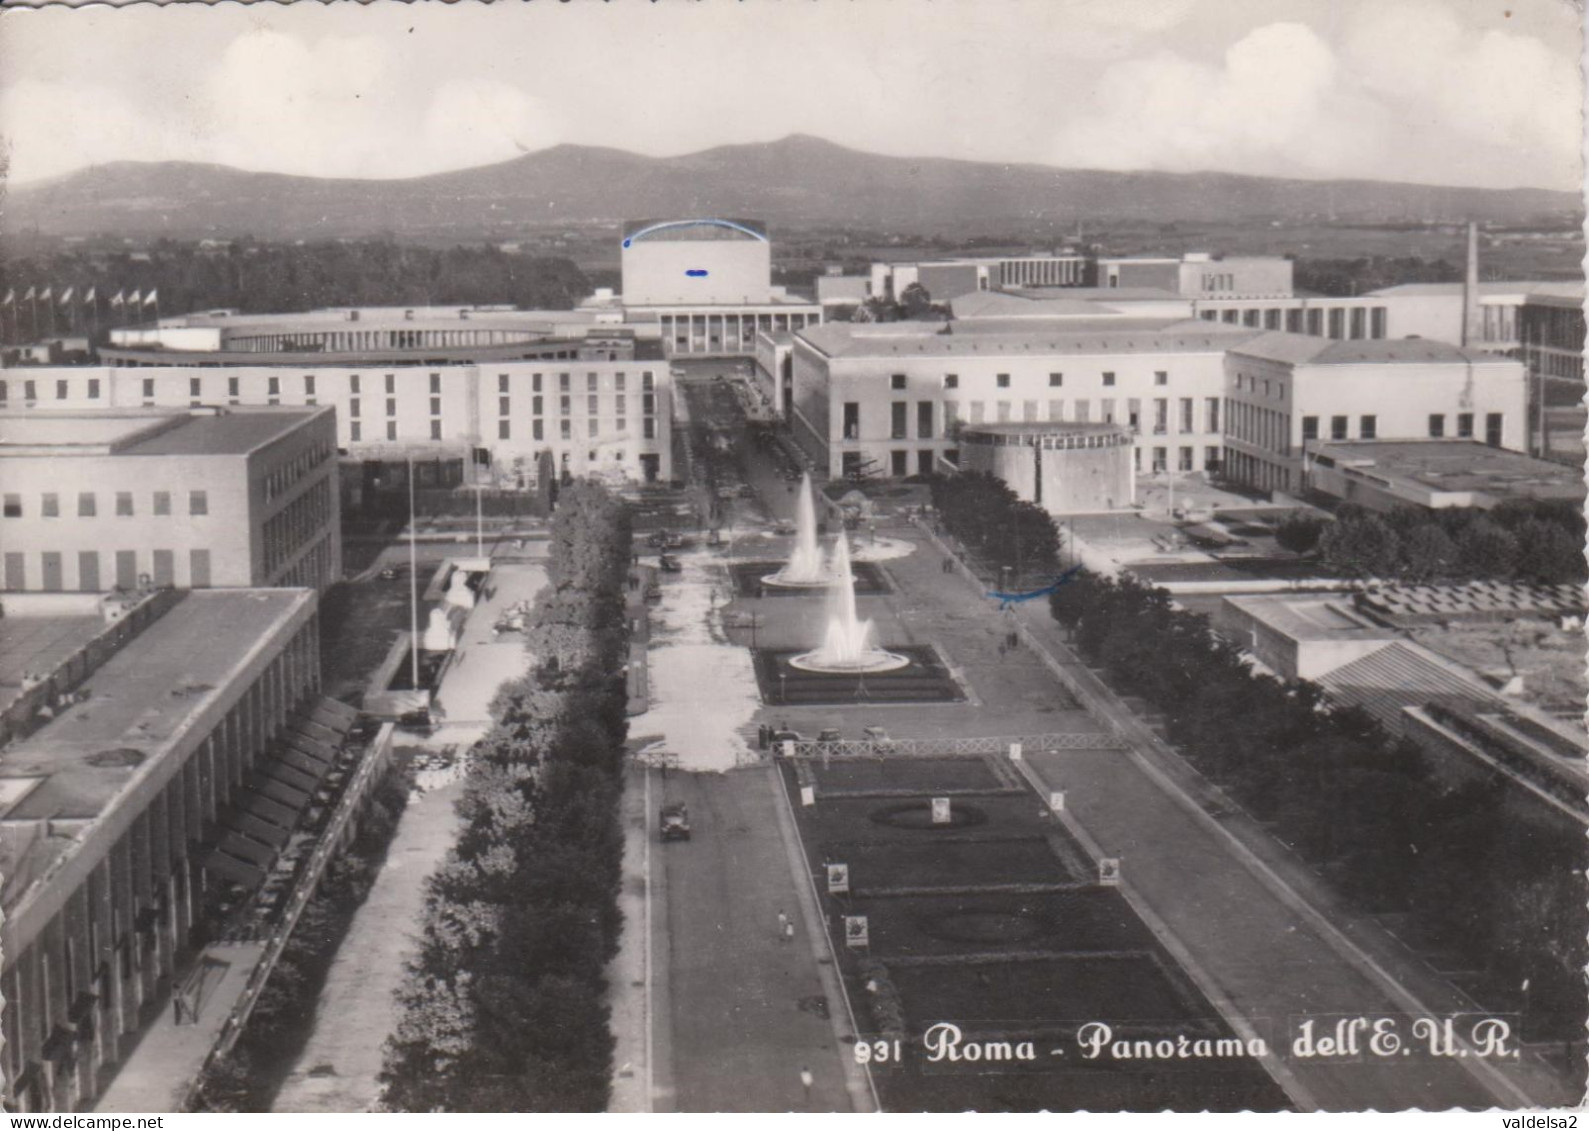 ROMA EUR - PANORAMA DELL'E.U.R. - FONTANE - 1958 - Exhibitions